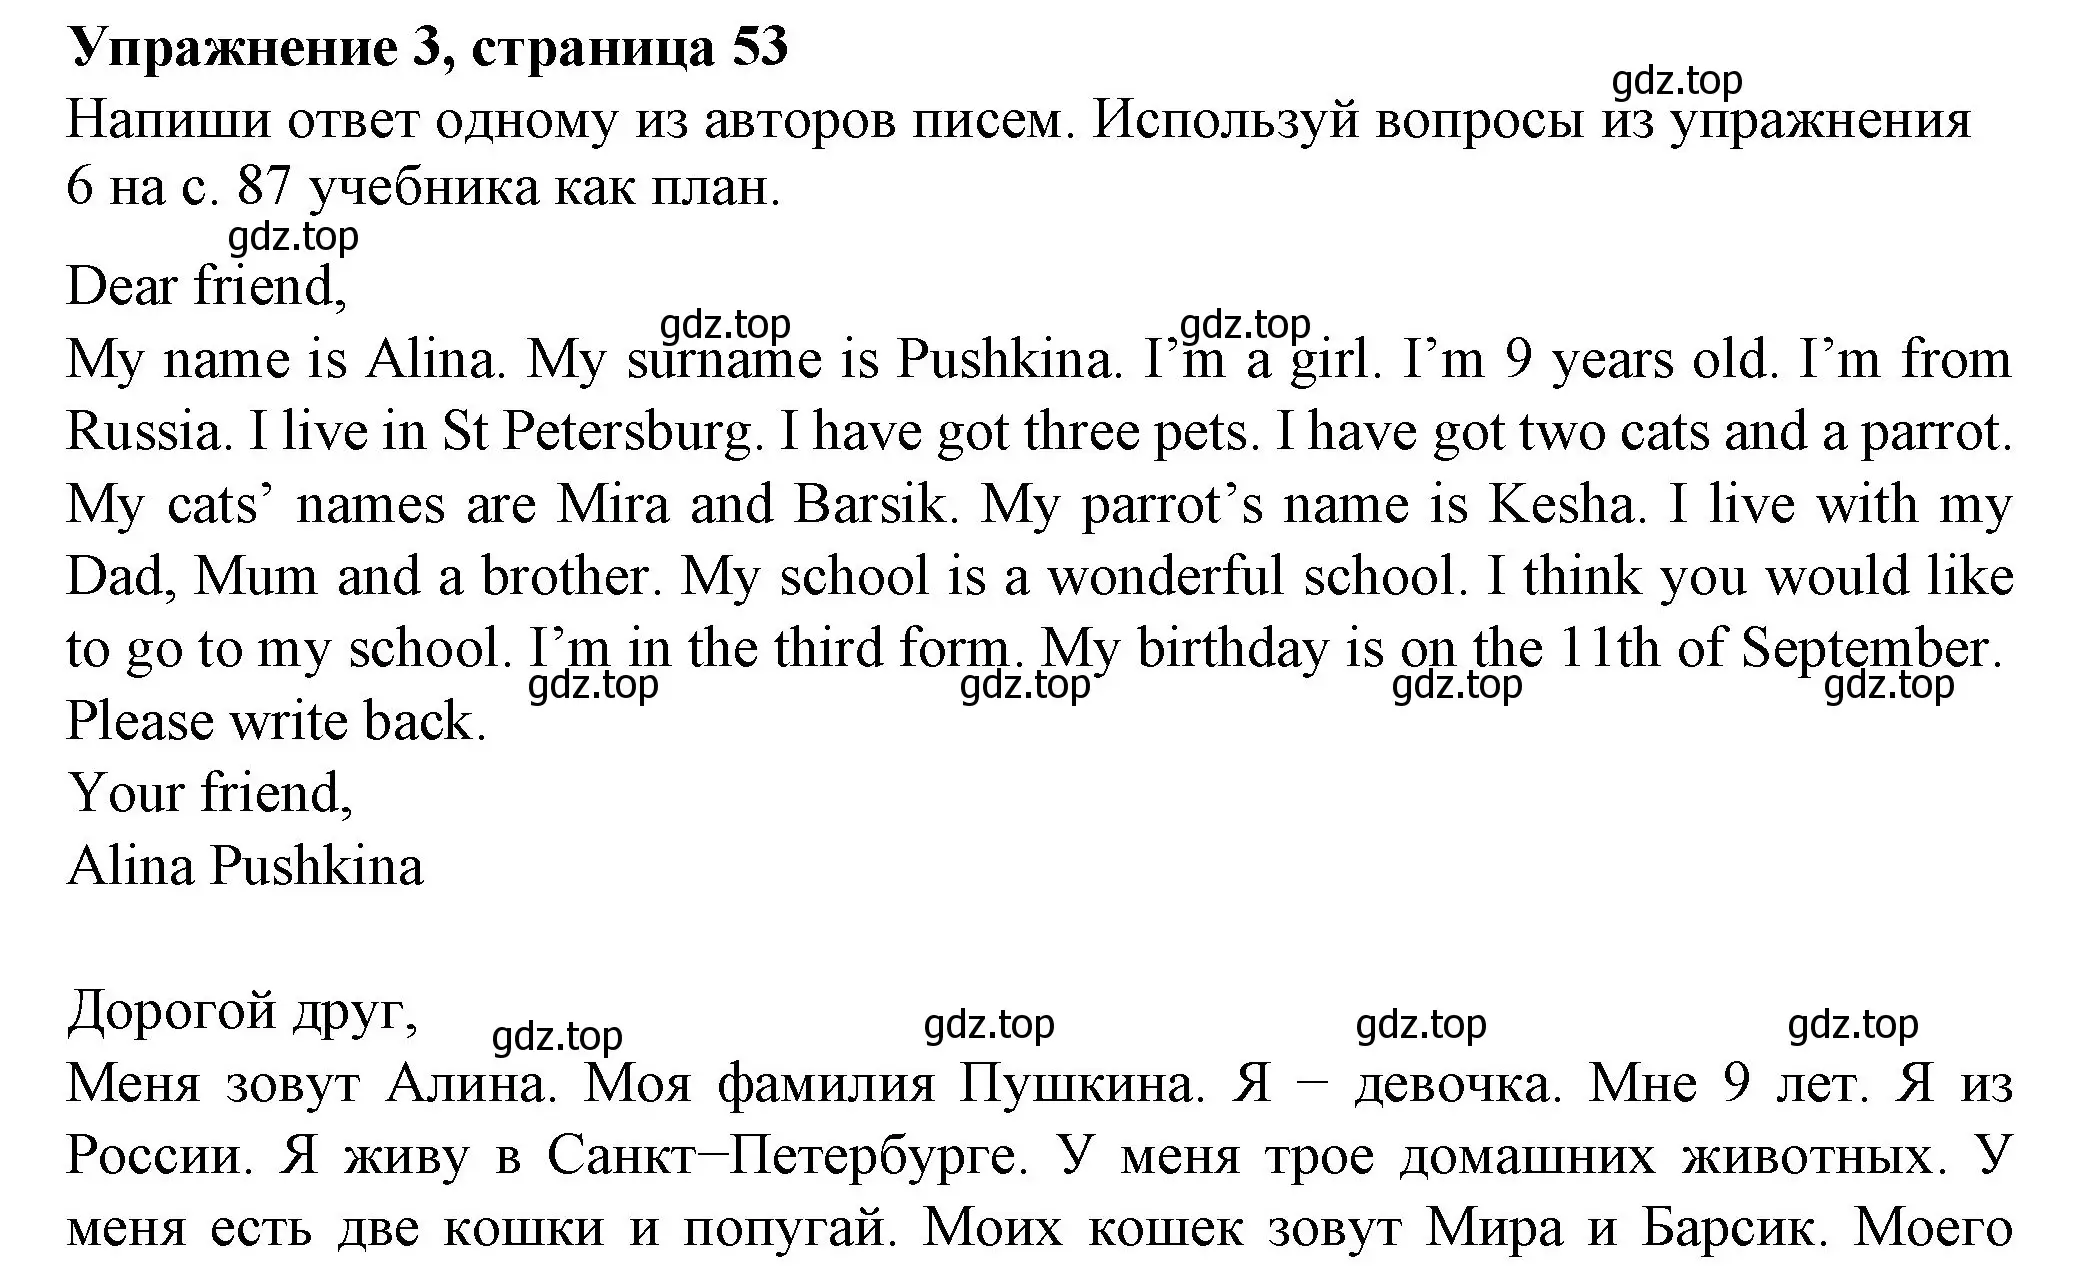 Решение номер 3 (страница 53) гдз по английскому языку 3 класс Биболетова, Денисенко, рабочая тетрадь